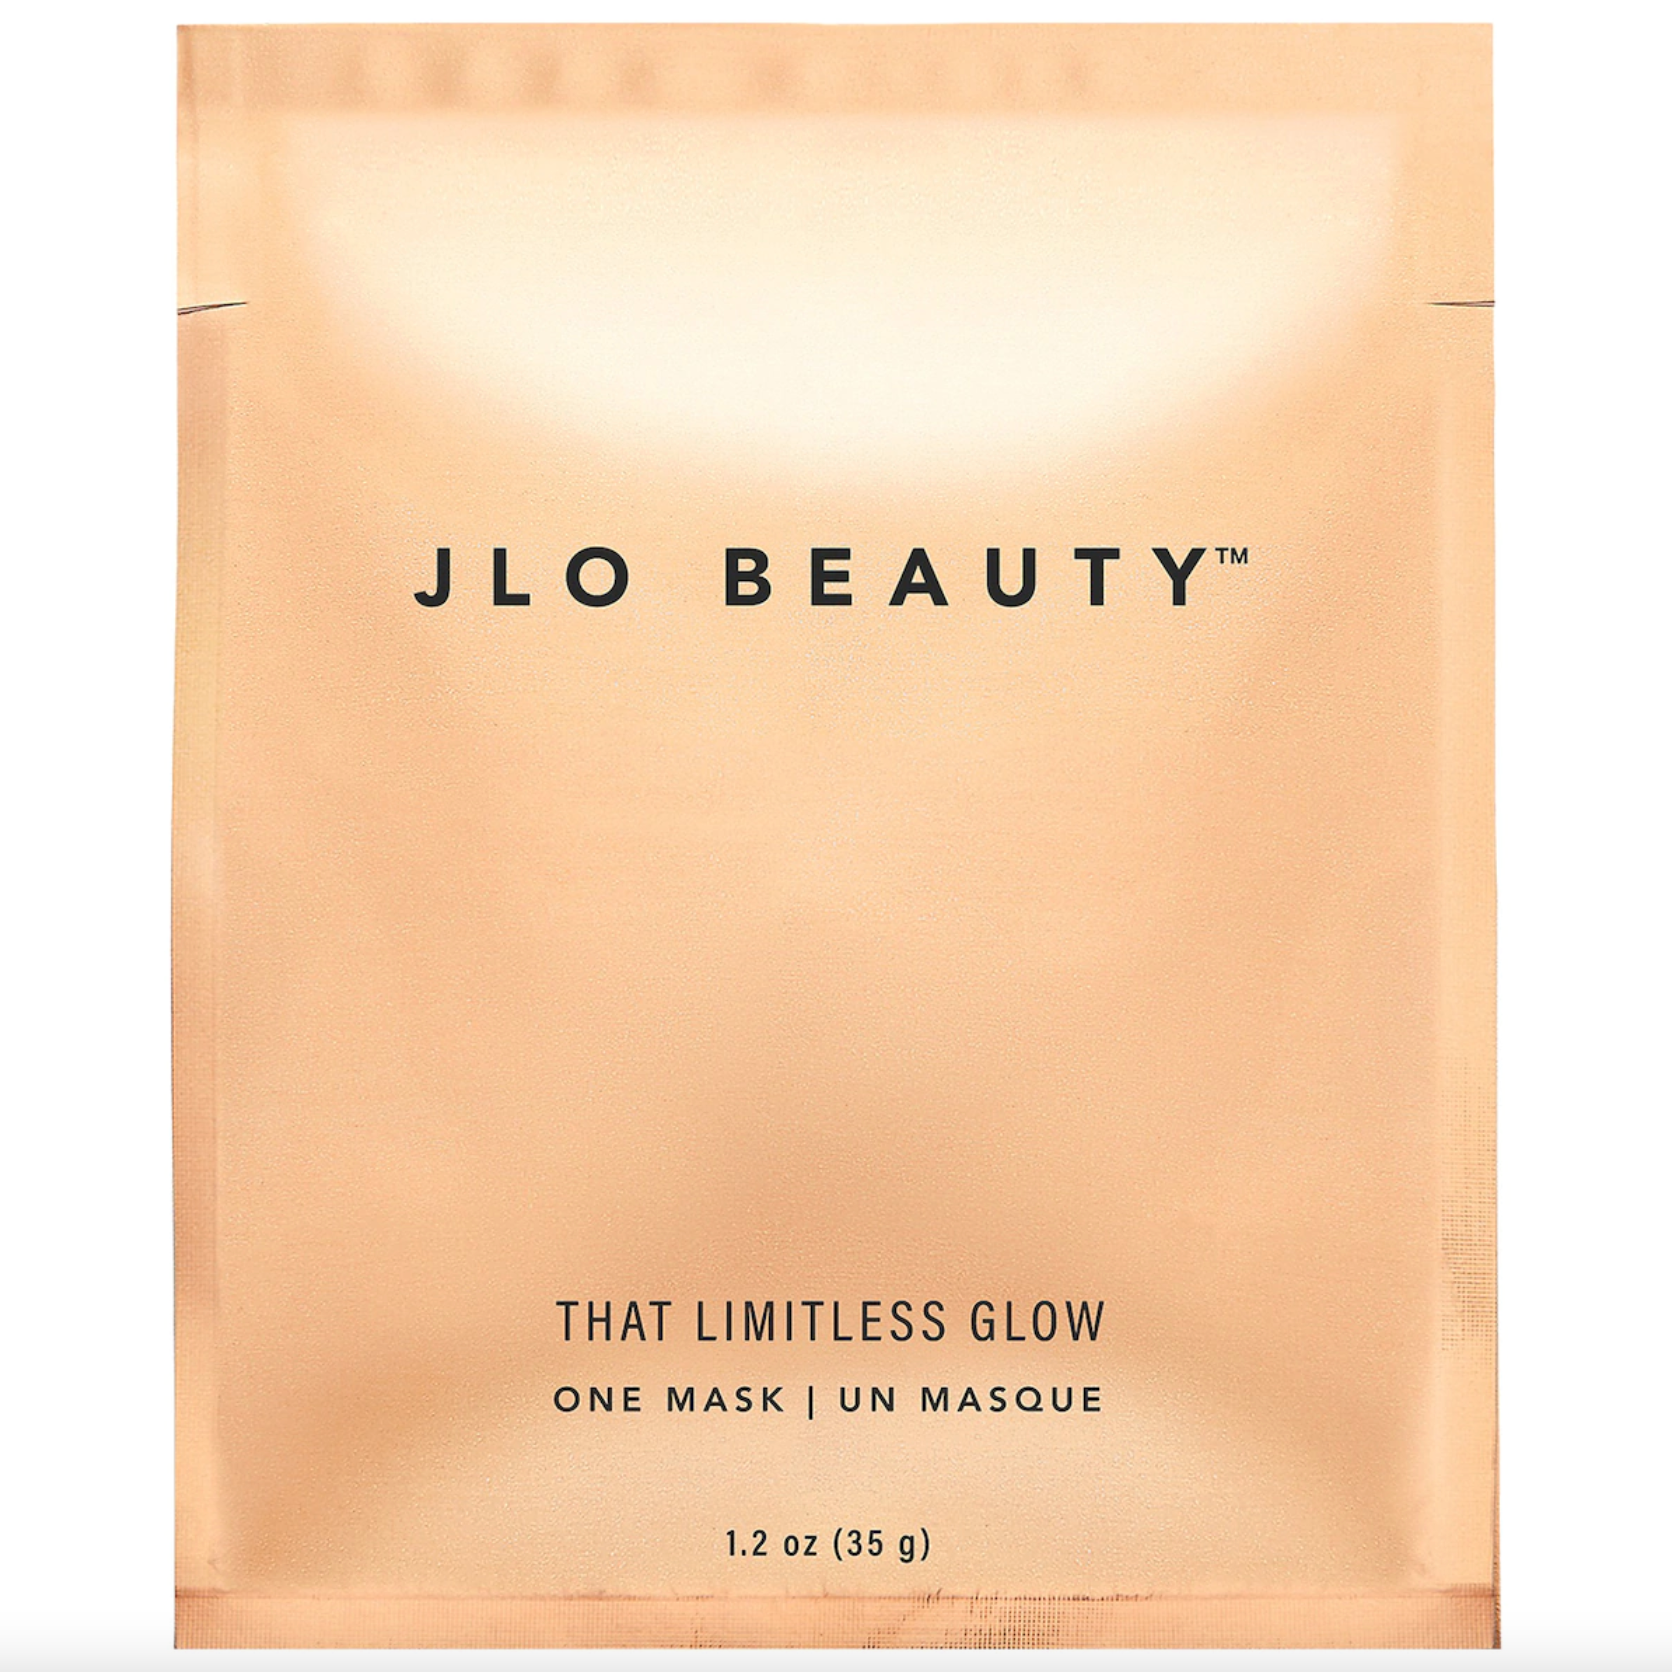 JLO Beauty Limitless Glow Sheet Mask